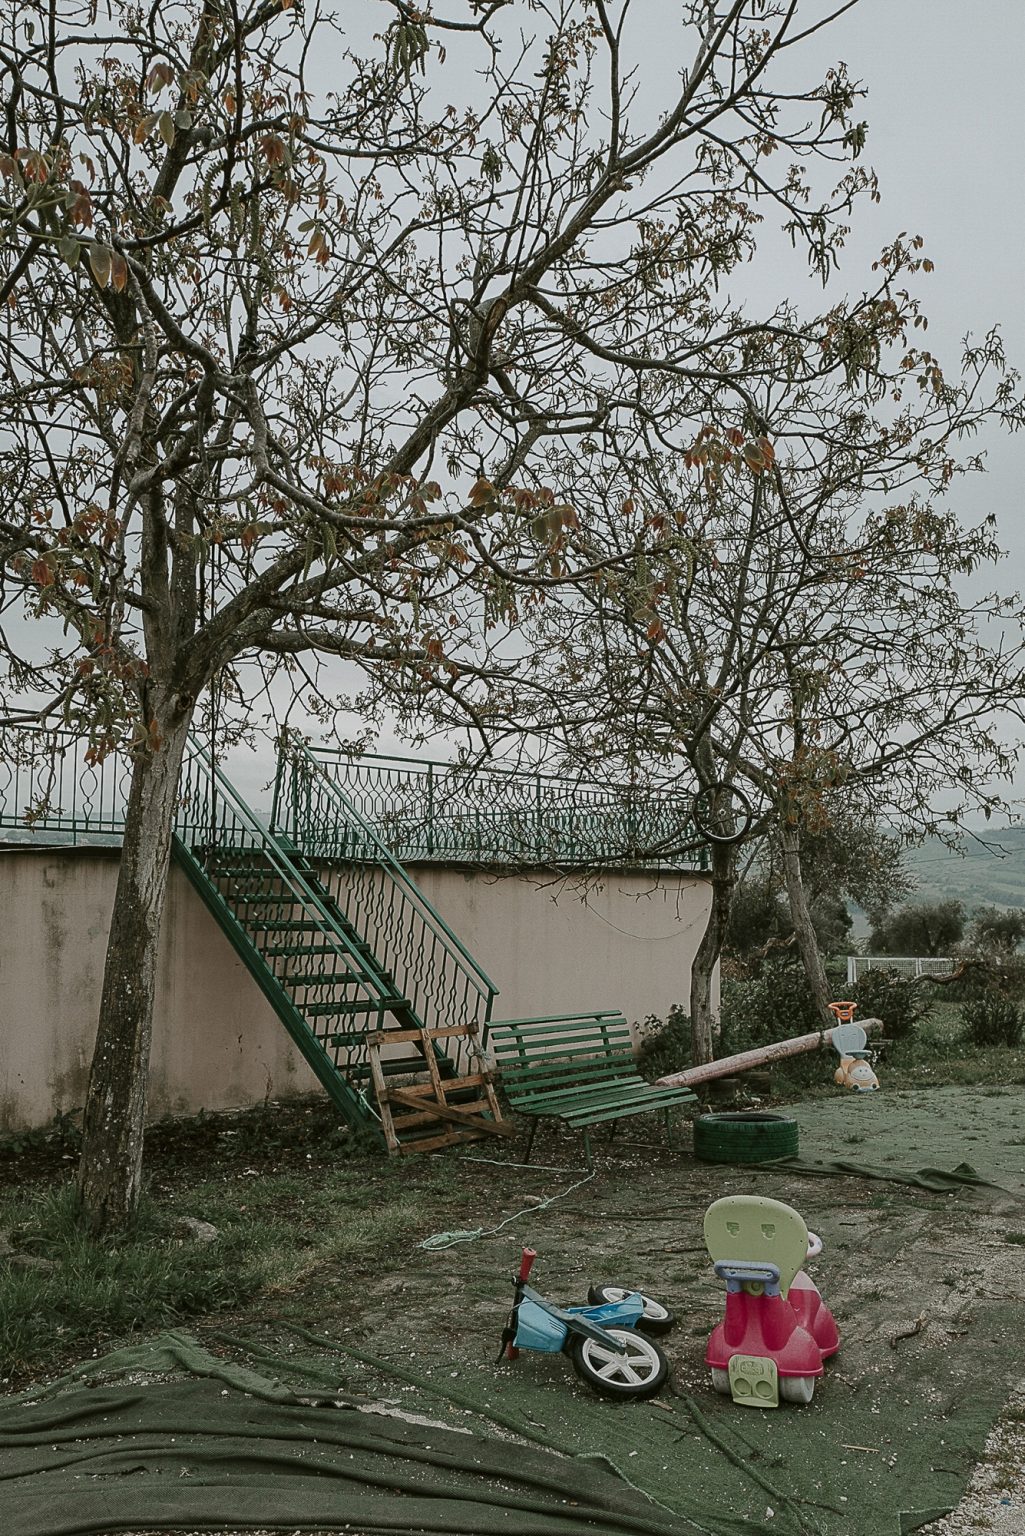 Canzano (Teramo), Abruzzo, April 2019 - Canzano shelter for refugees and asylum seekers. ><
Canzano (Teramo), Abruzzo, aprile 2019 - CAS Canzano (Centro di accoglienza straordinaria di richiedenti asilo e rifugiati).